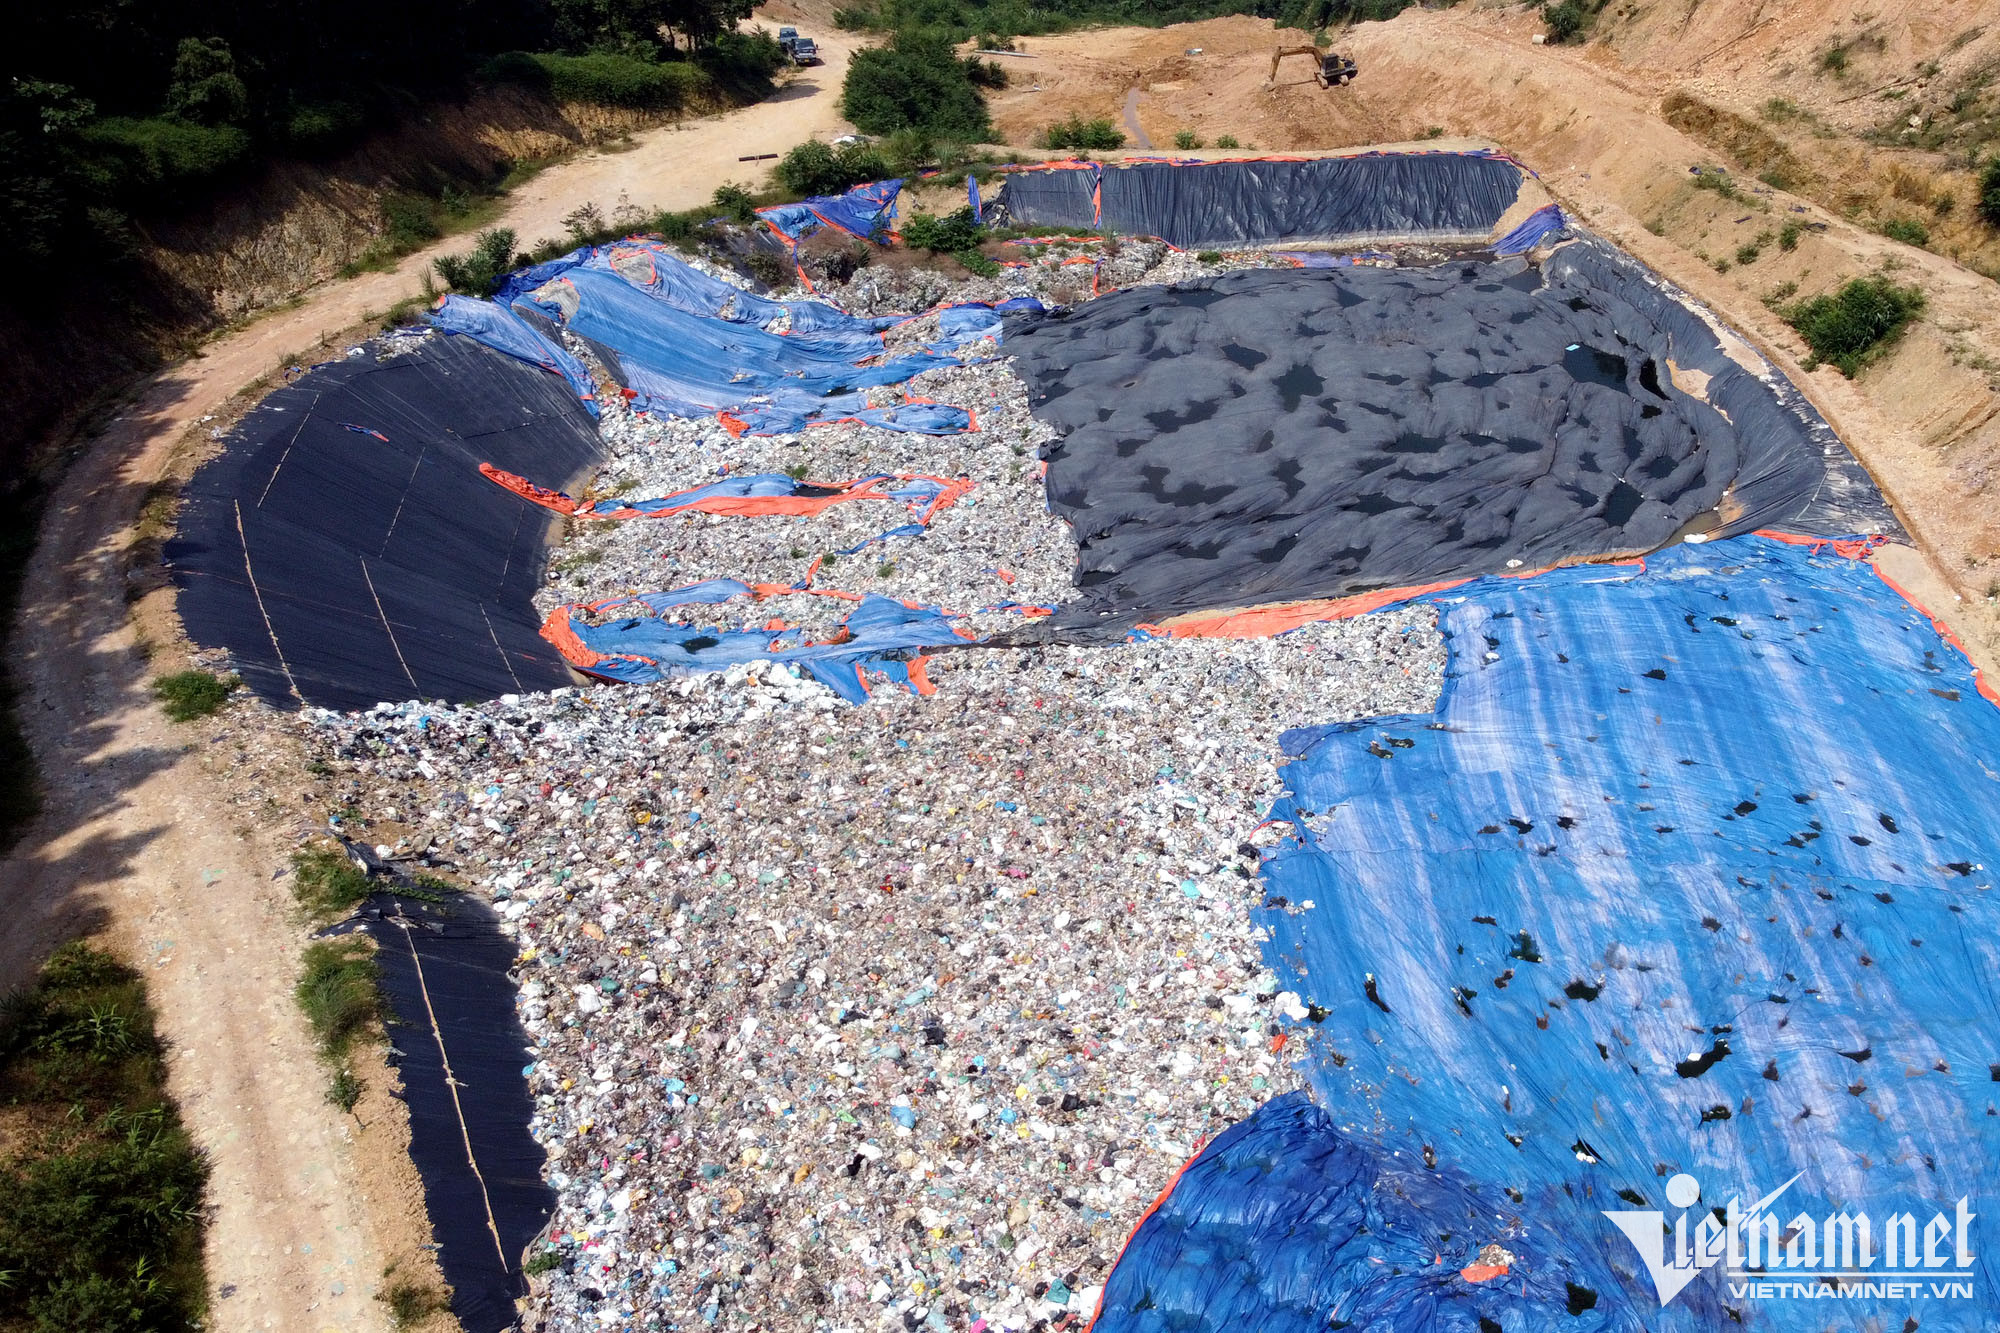 Nghìn tấn rác đổ giữa rừng: Trái quy hoạch, có dấu hiệu vi phạm pháp luật